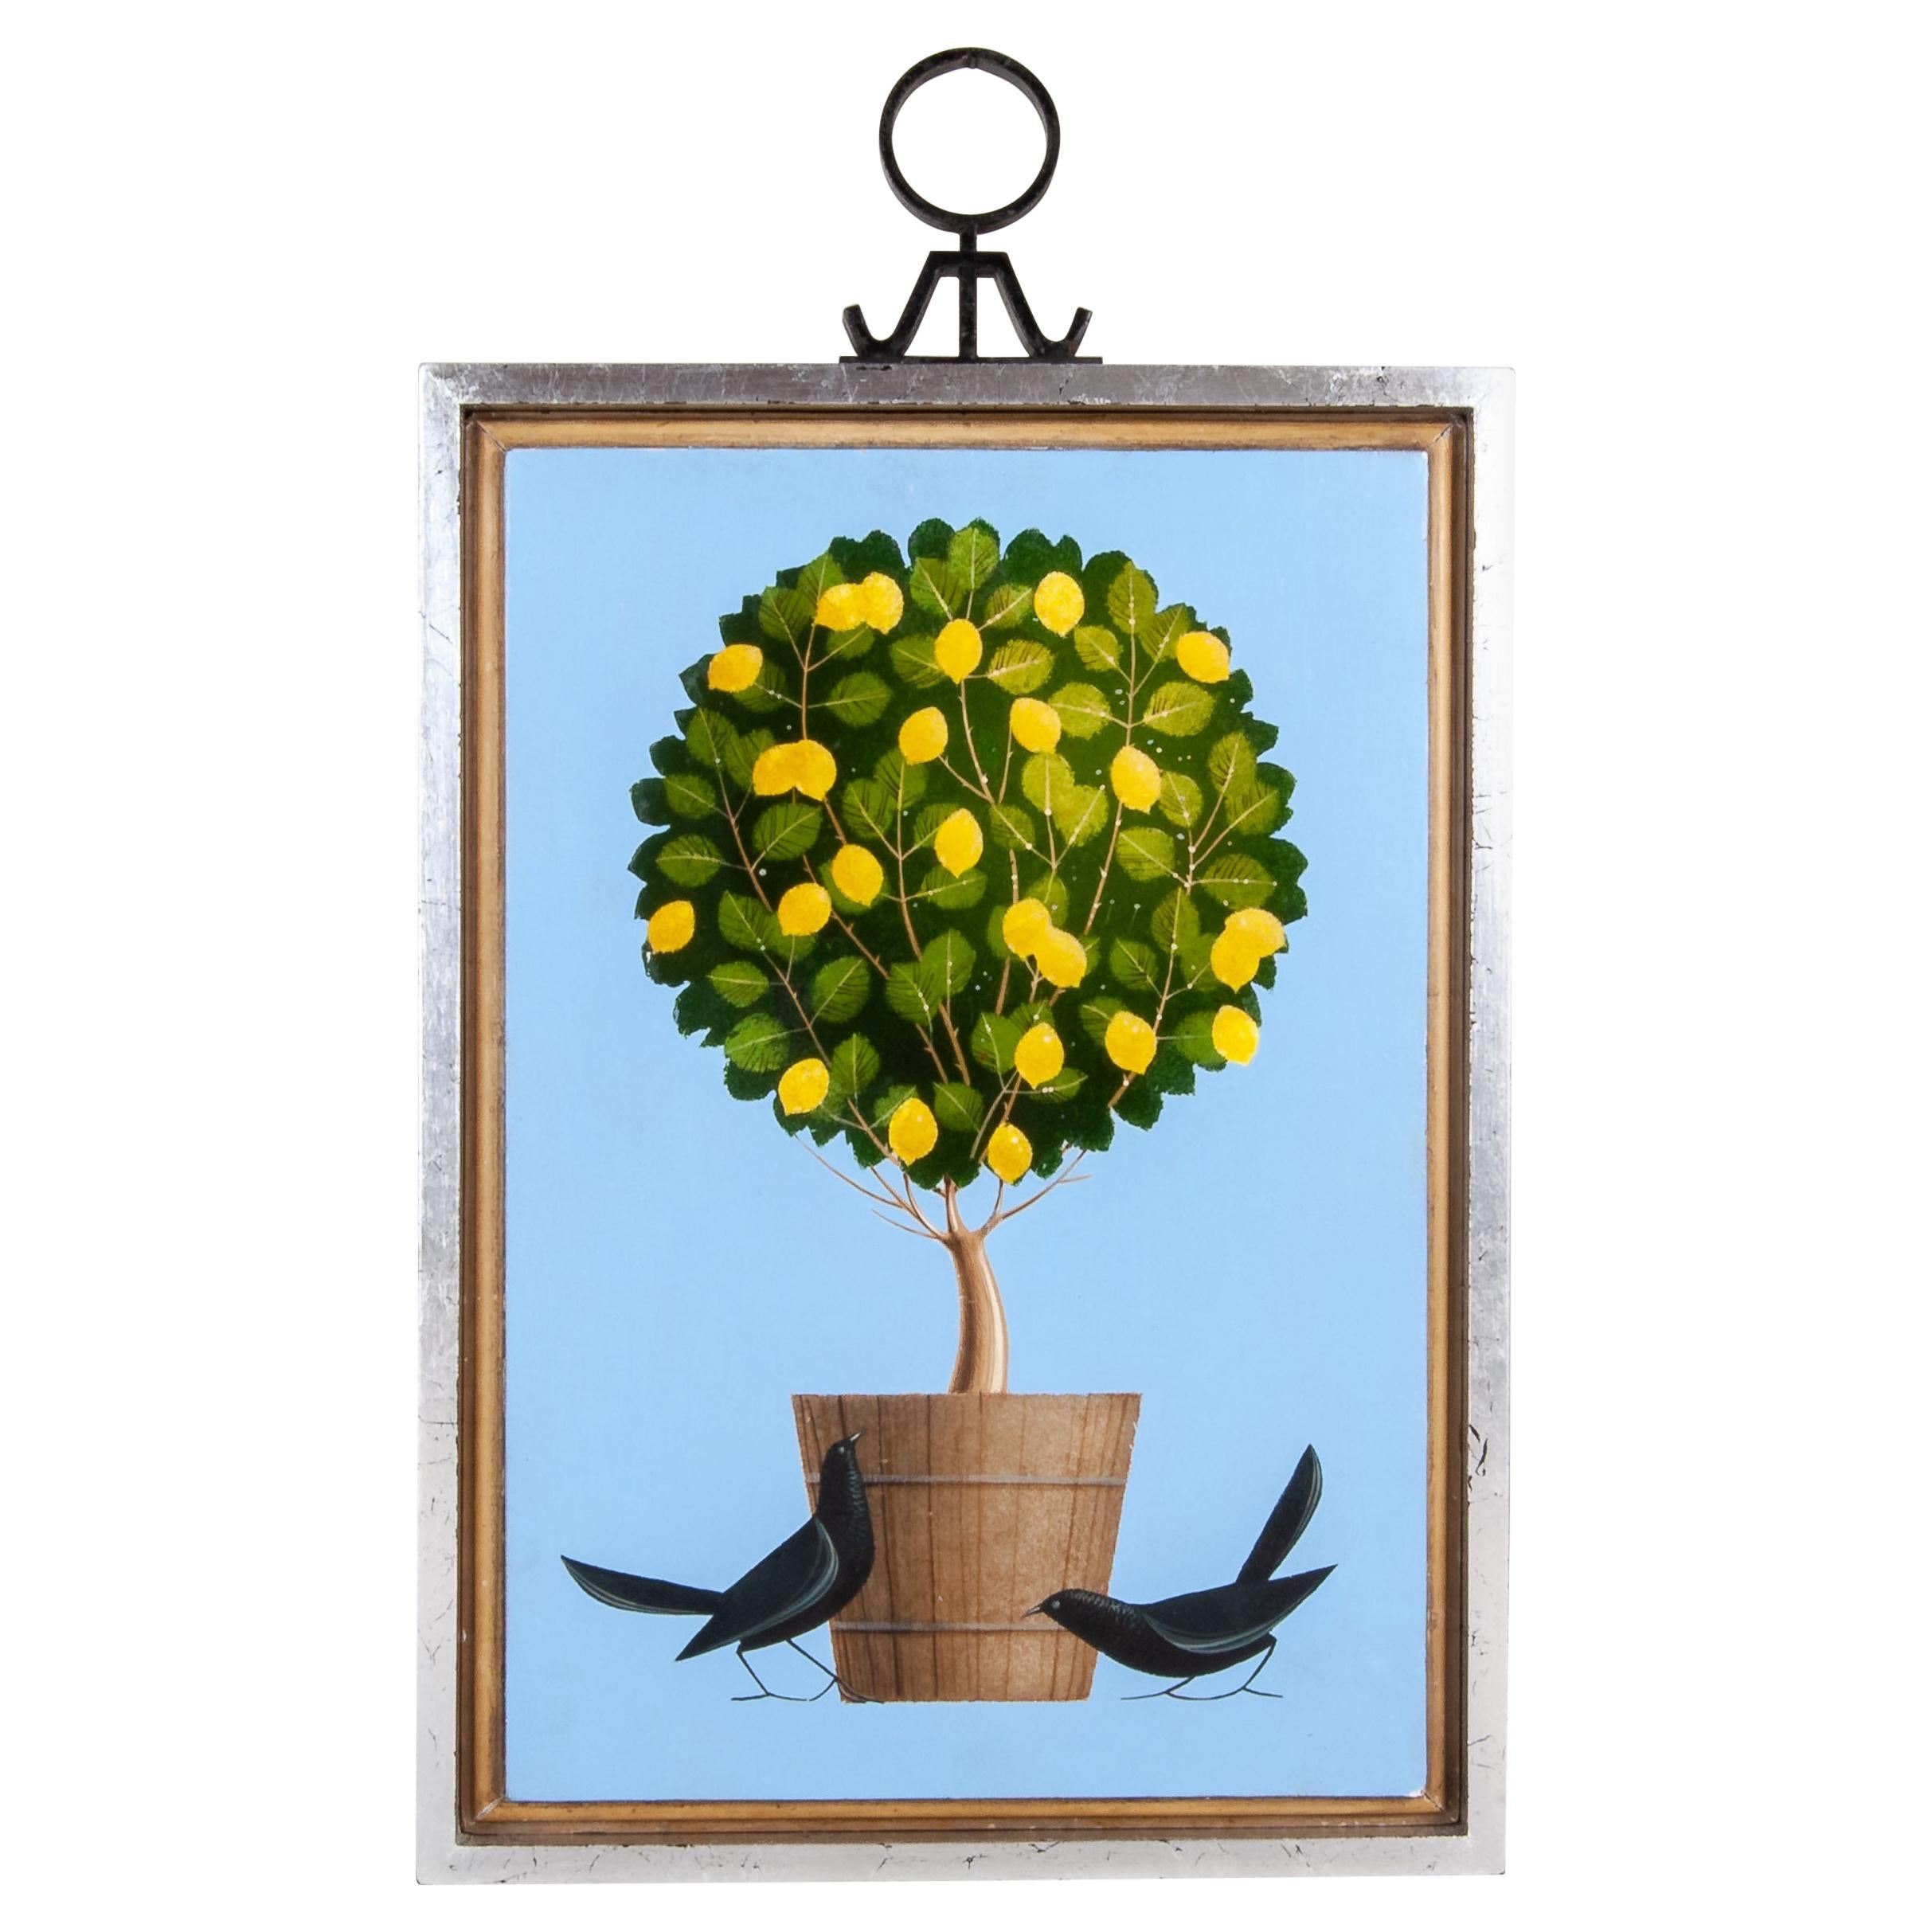 Original Acryl auf Holz Gemälde von Vögeln und Topf mit Baum von Rangel Hidalgo, Original